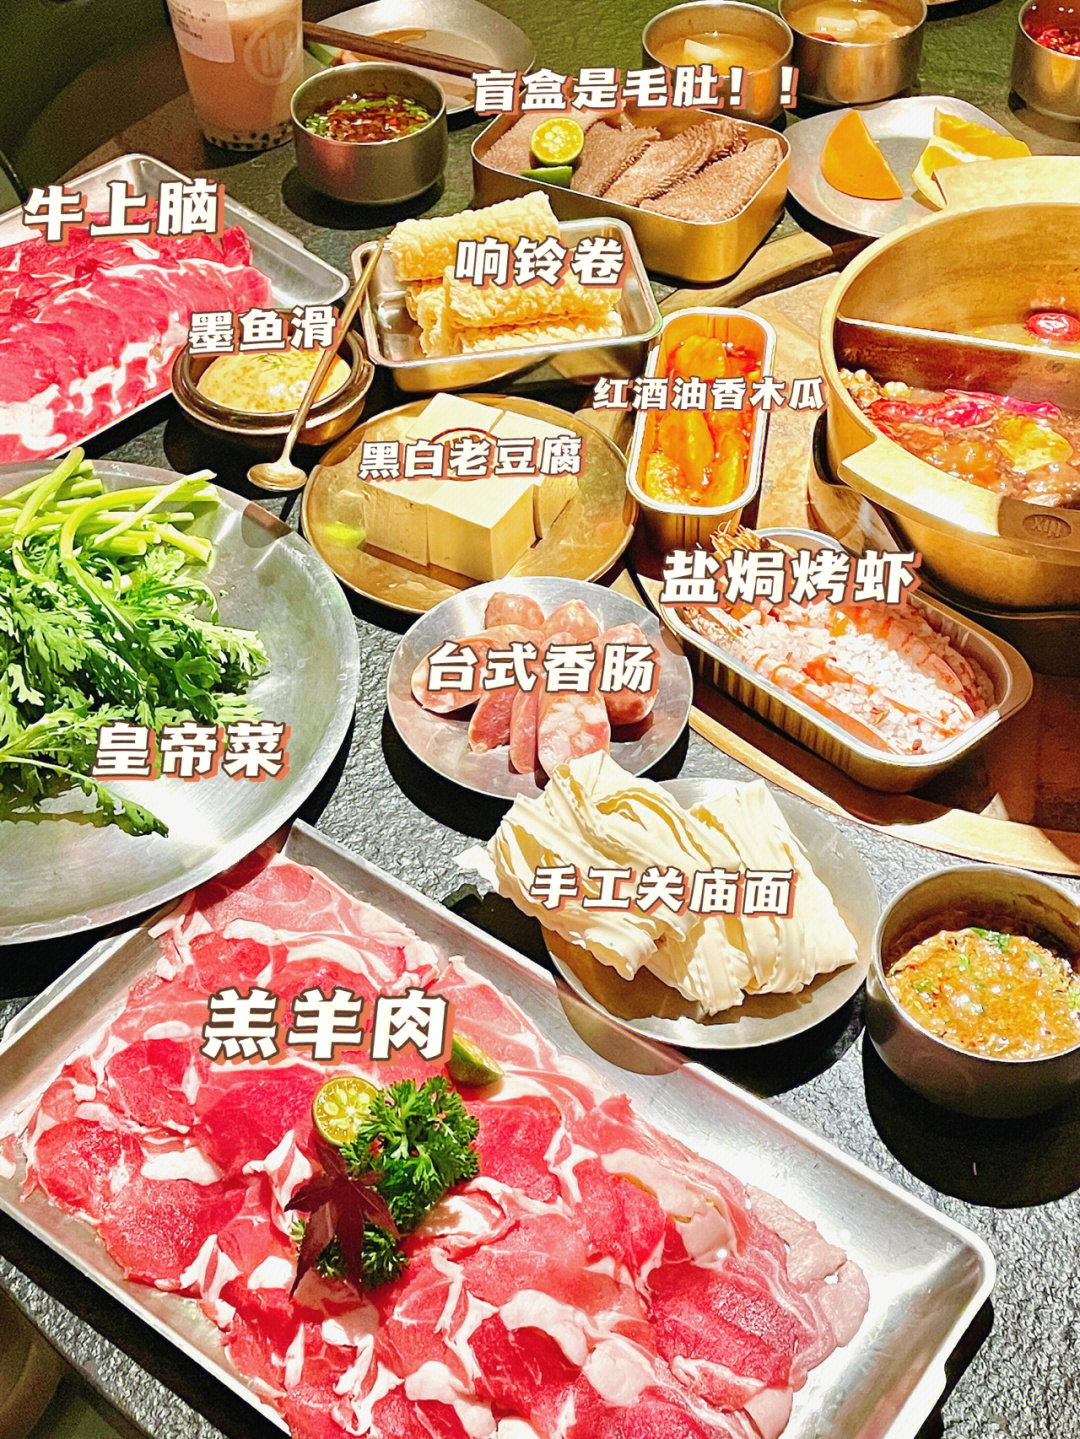 广州有一家可以开盲盒吃烤肉的火锅店